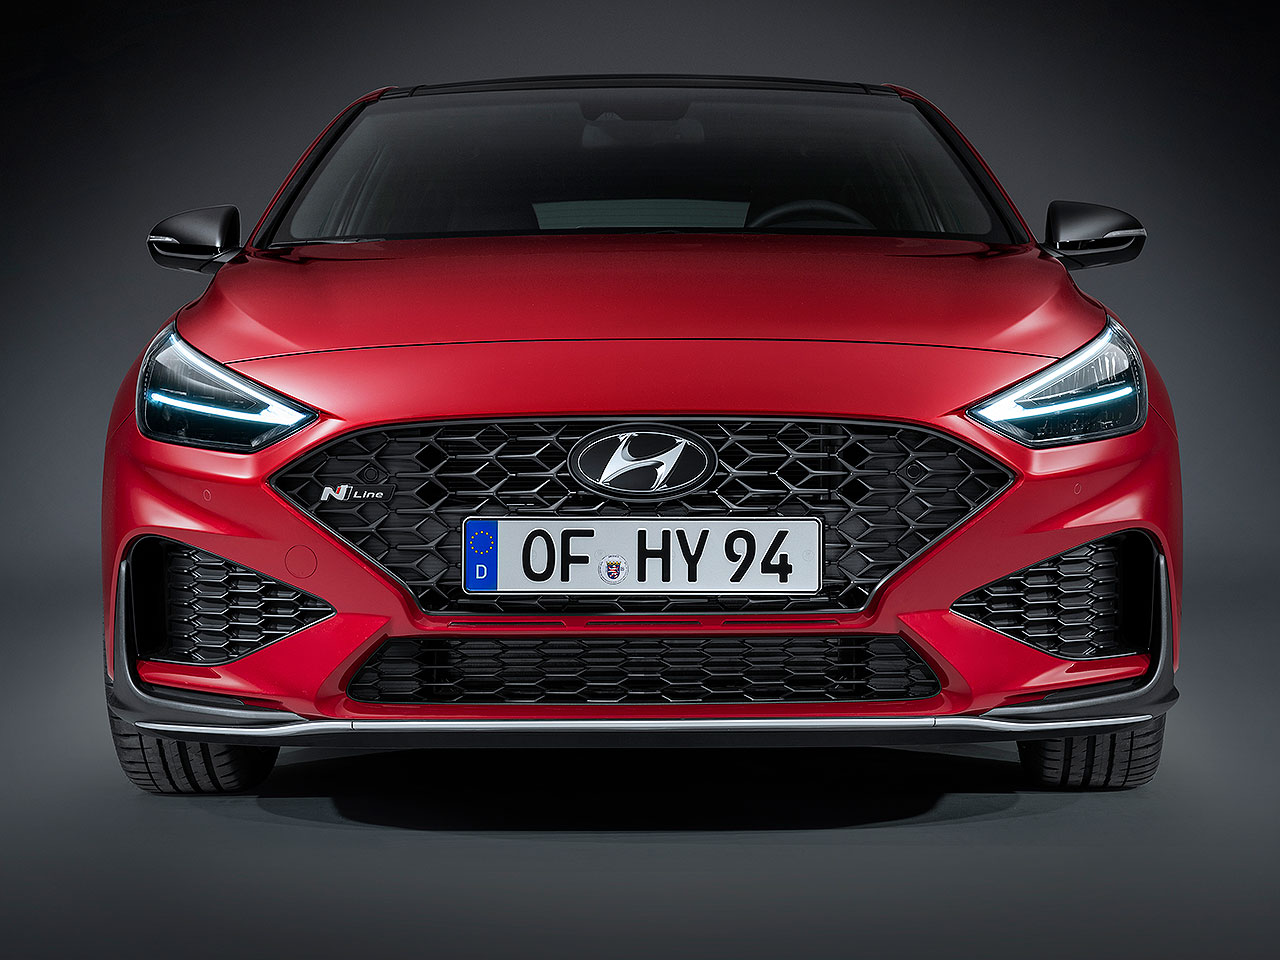 Acima o Hyundai i30 europeu: inspiração para o facelift do HB20 nacional